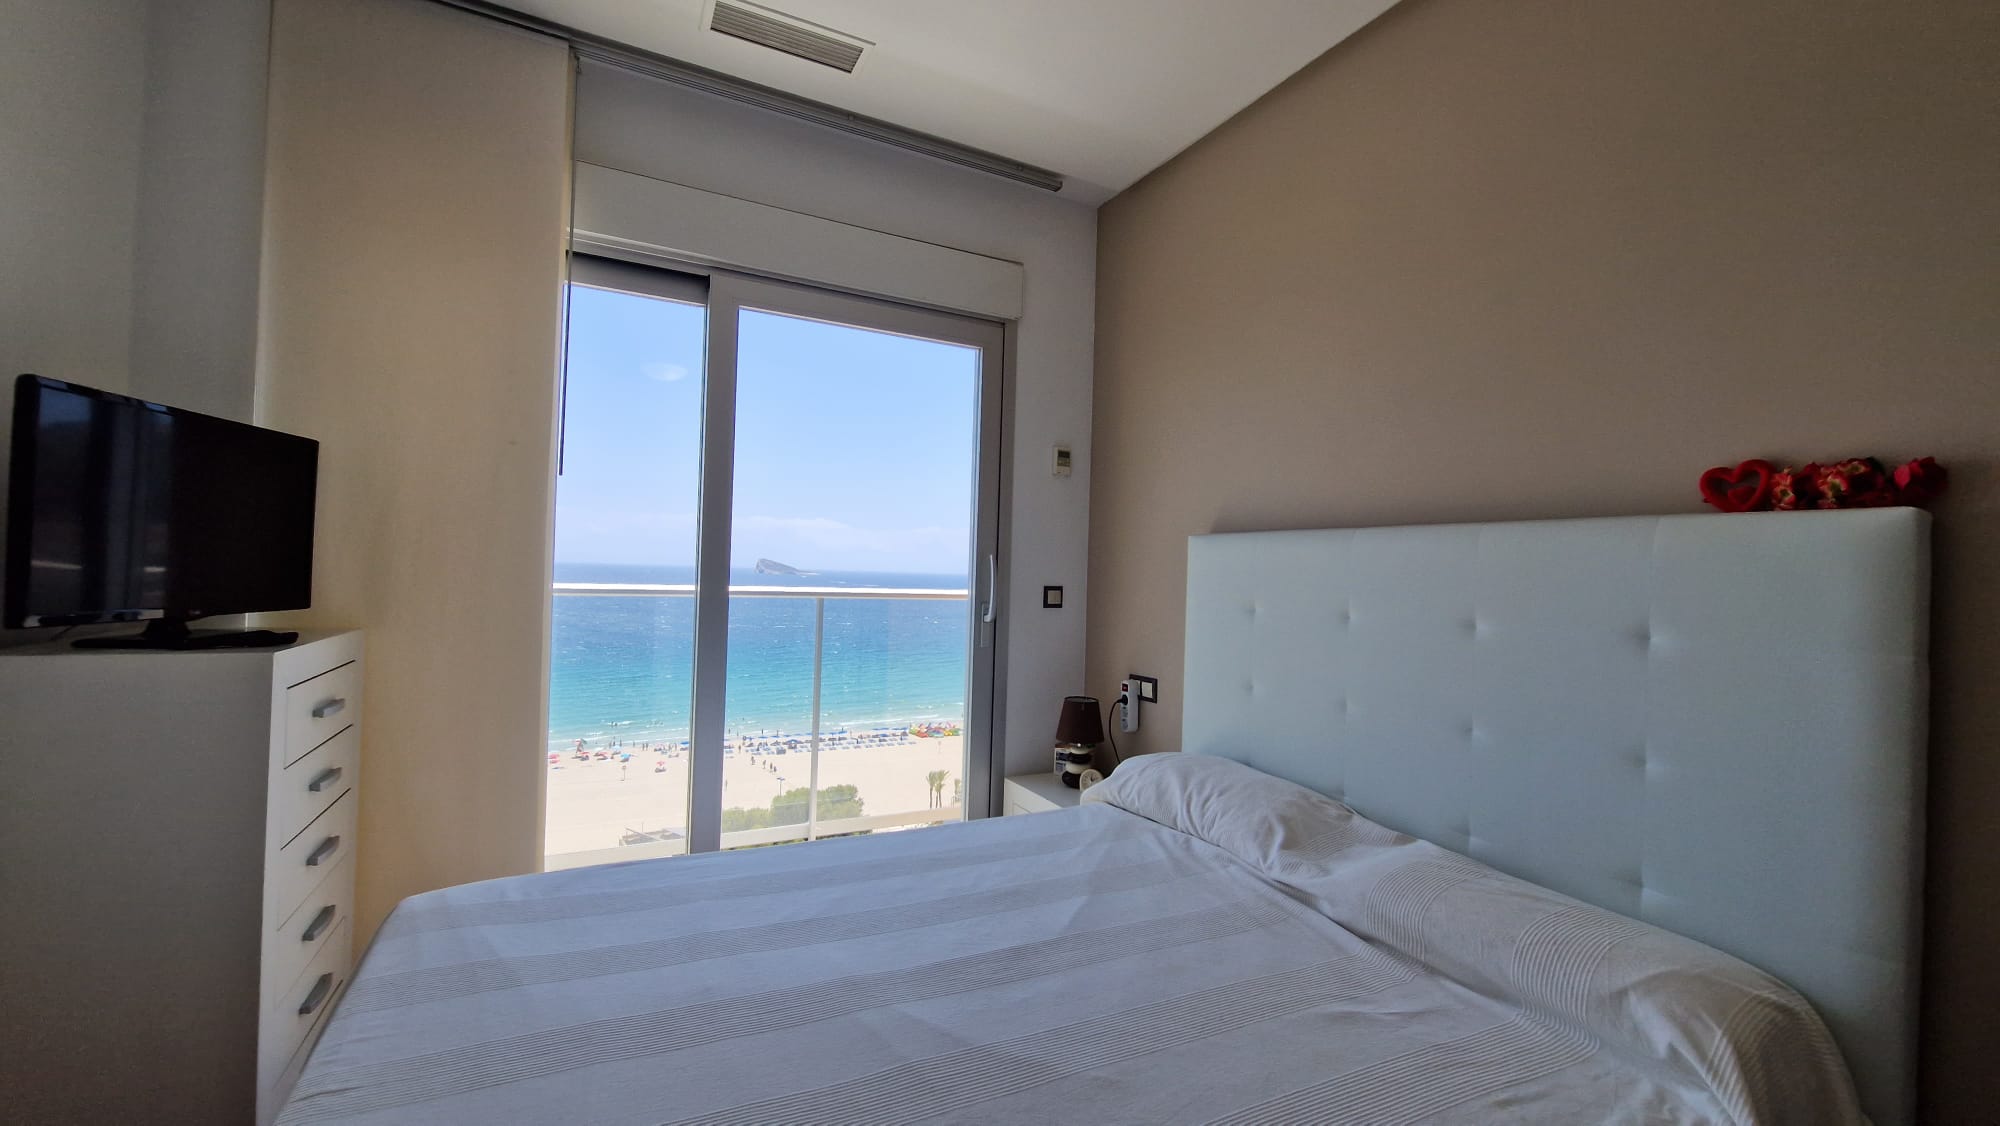 Frontline Beach Apartment Benidorm: Den ideelle opplevelsen ved kysten